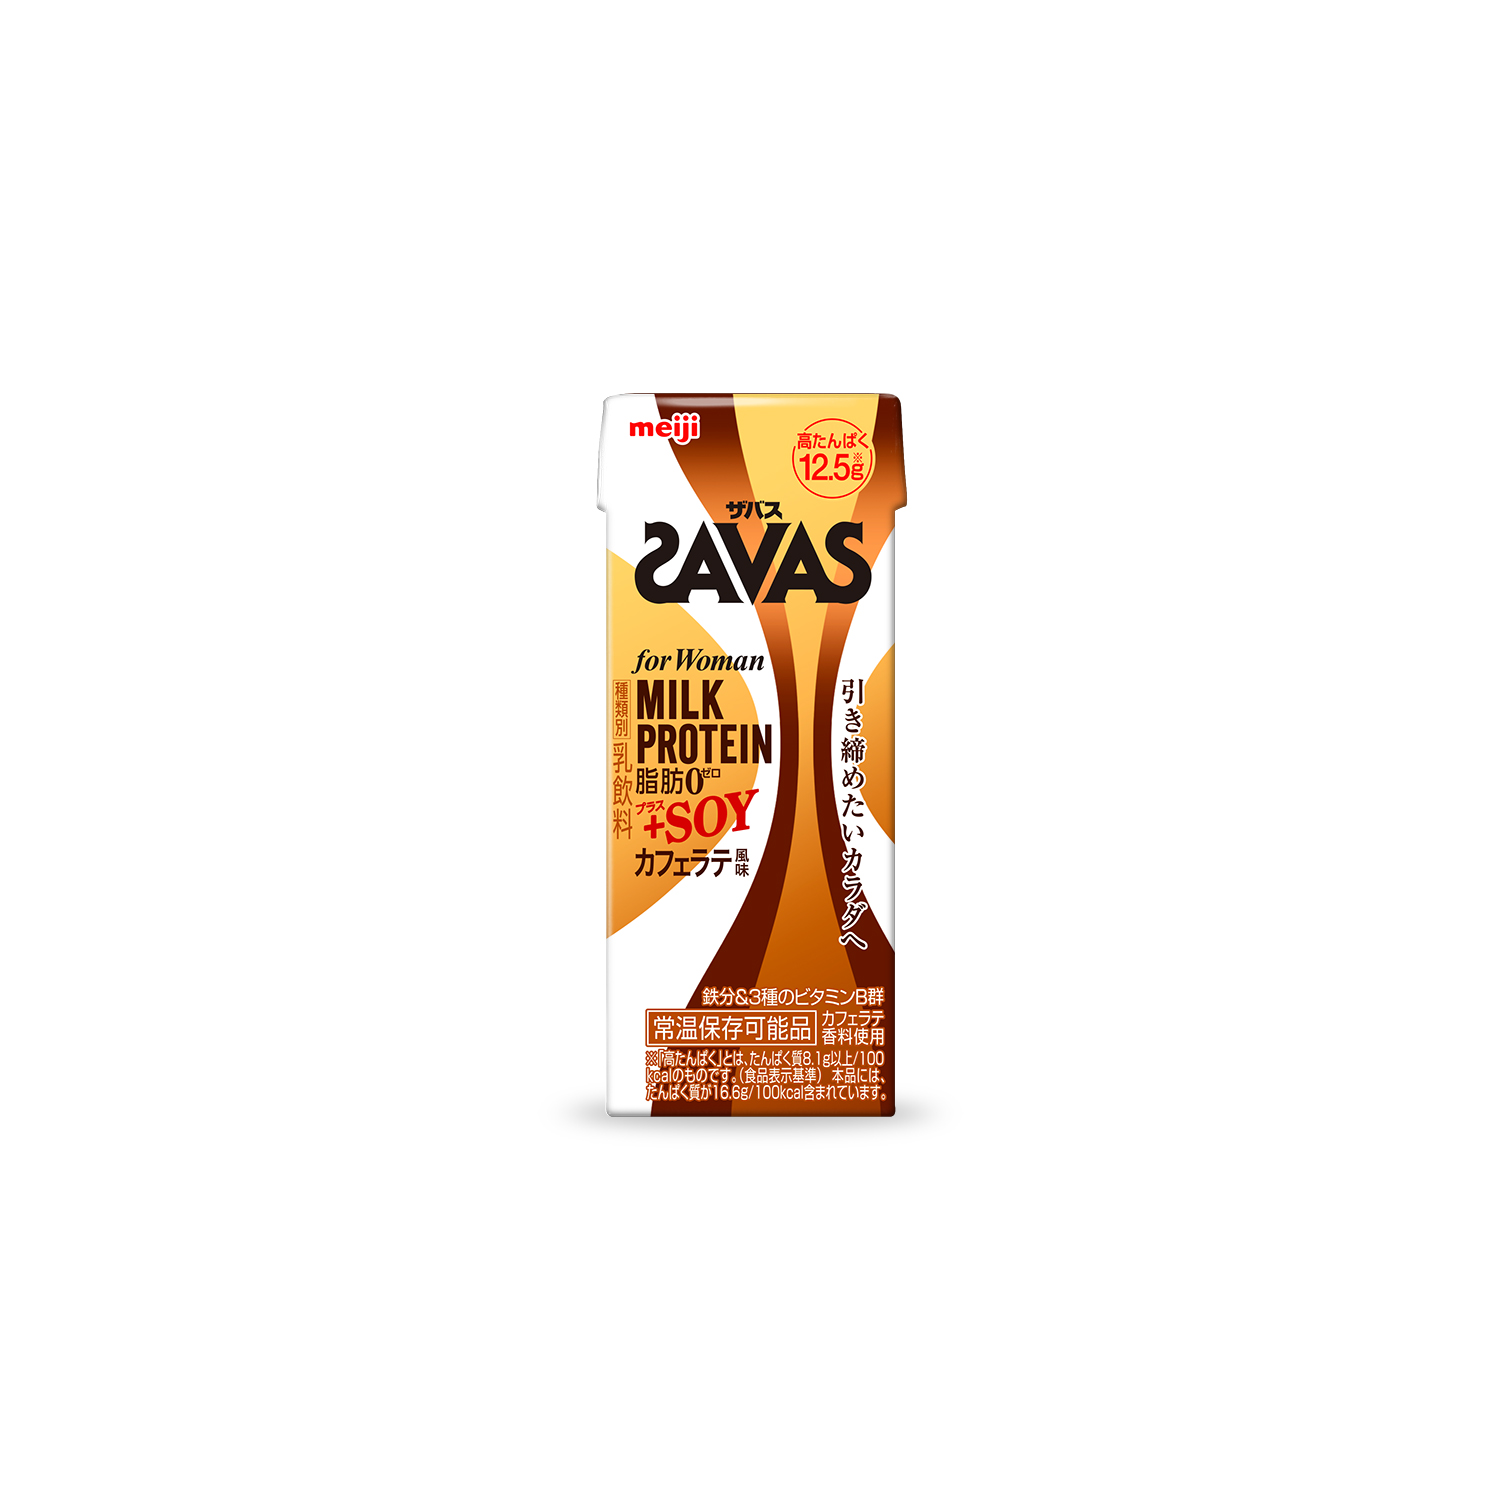 SAVAS FOR WOMANのパッケージデザイン